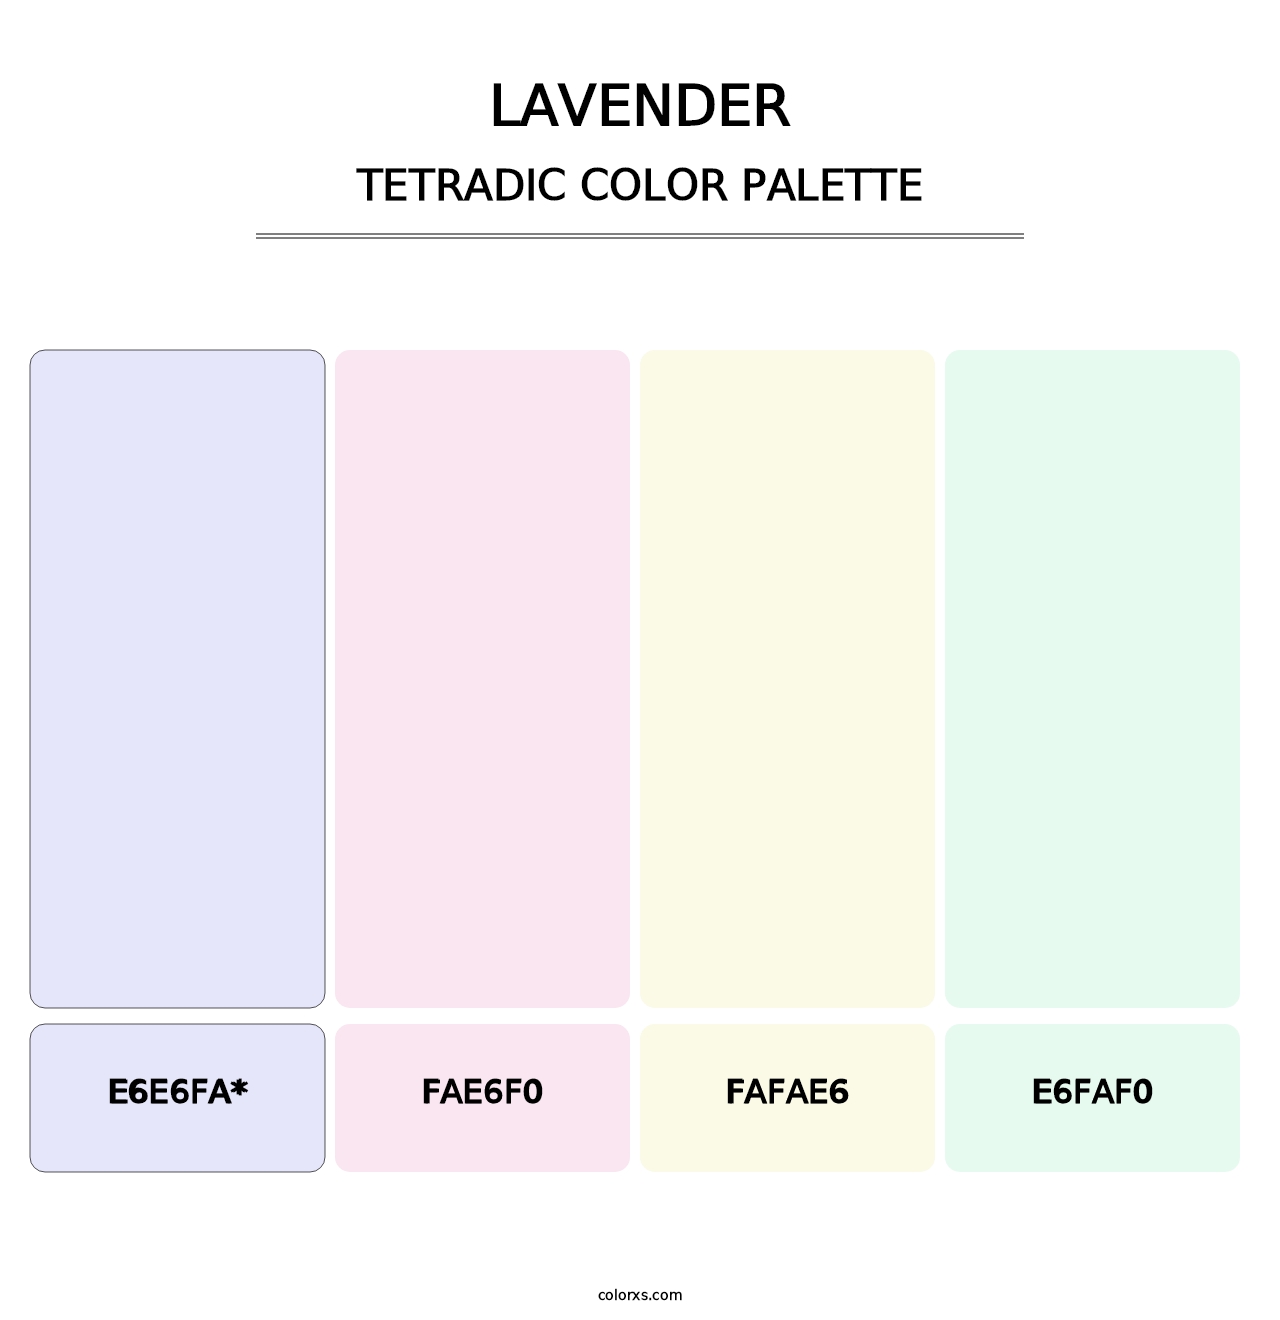 Lavender - Tetradic Color Palette